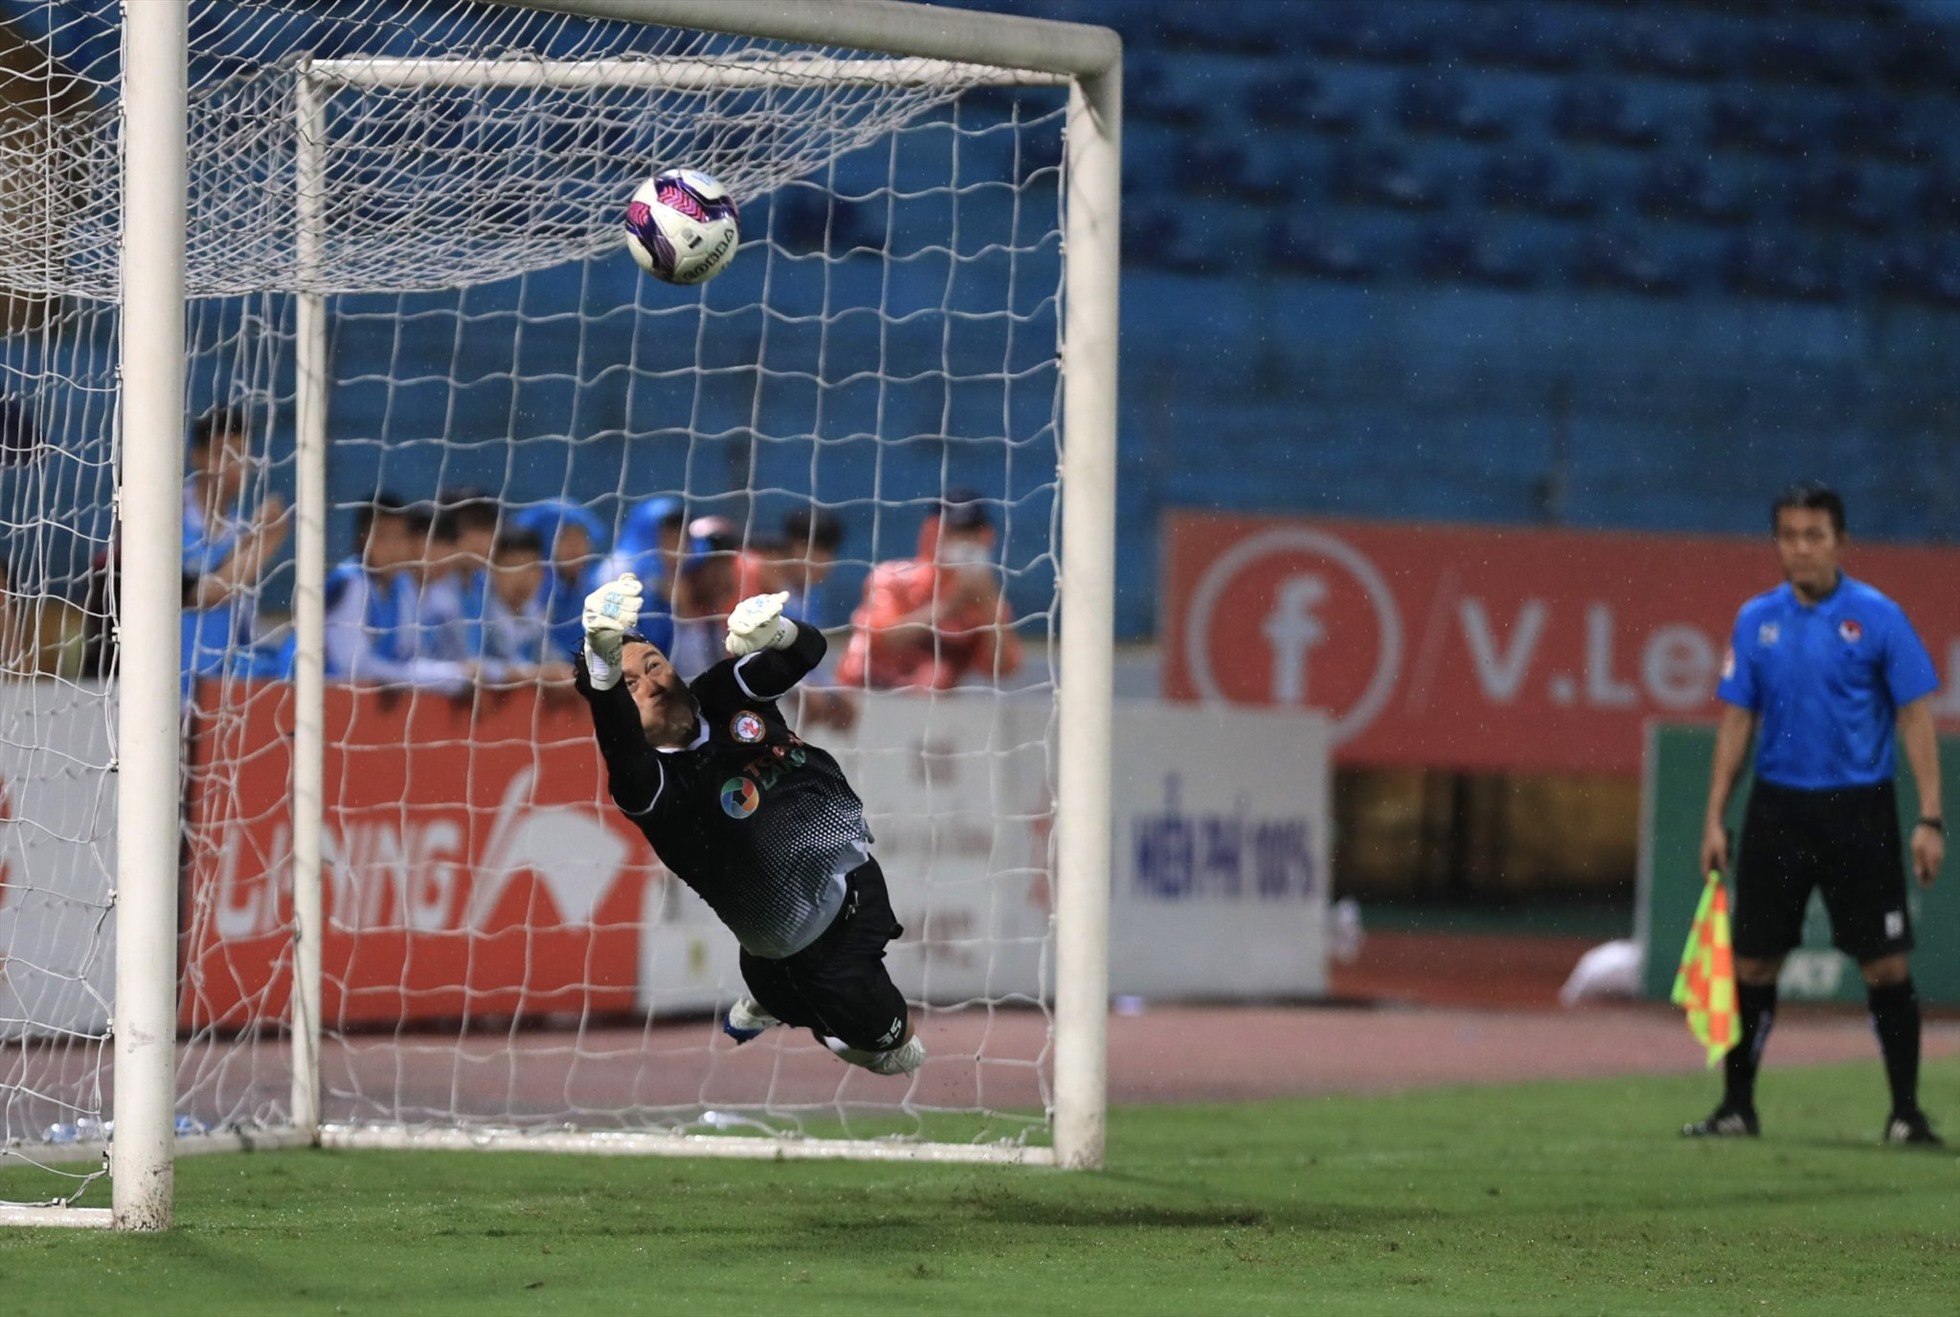 Văn Lâm cản phá thafnhc ông cú sút của Viettel, đưa Bình Định vào Bán kết Cup Quốc gia.